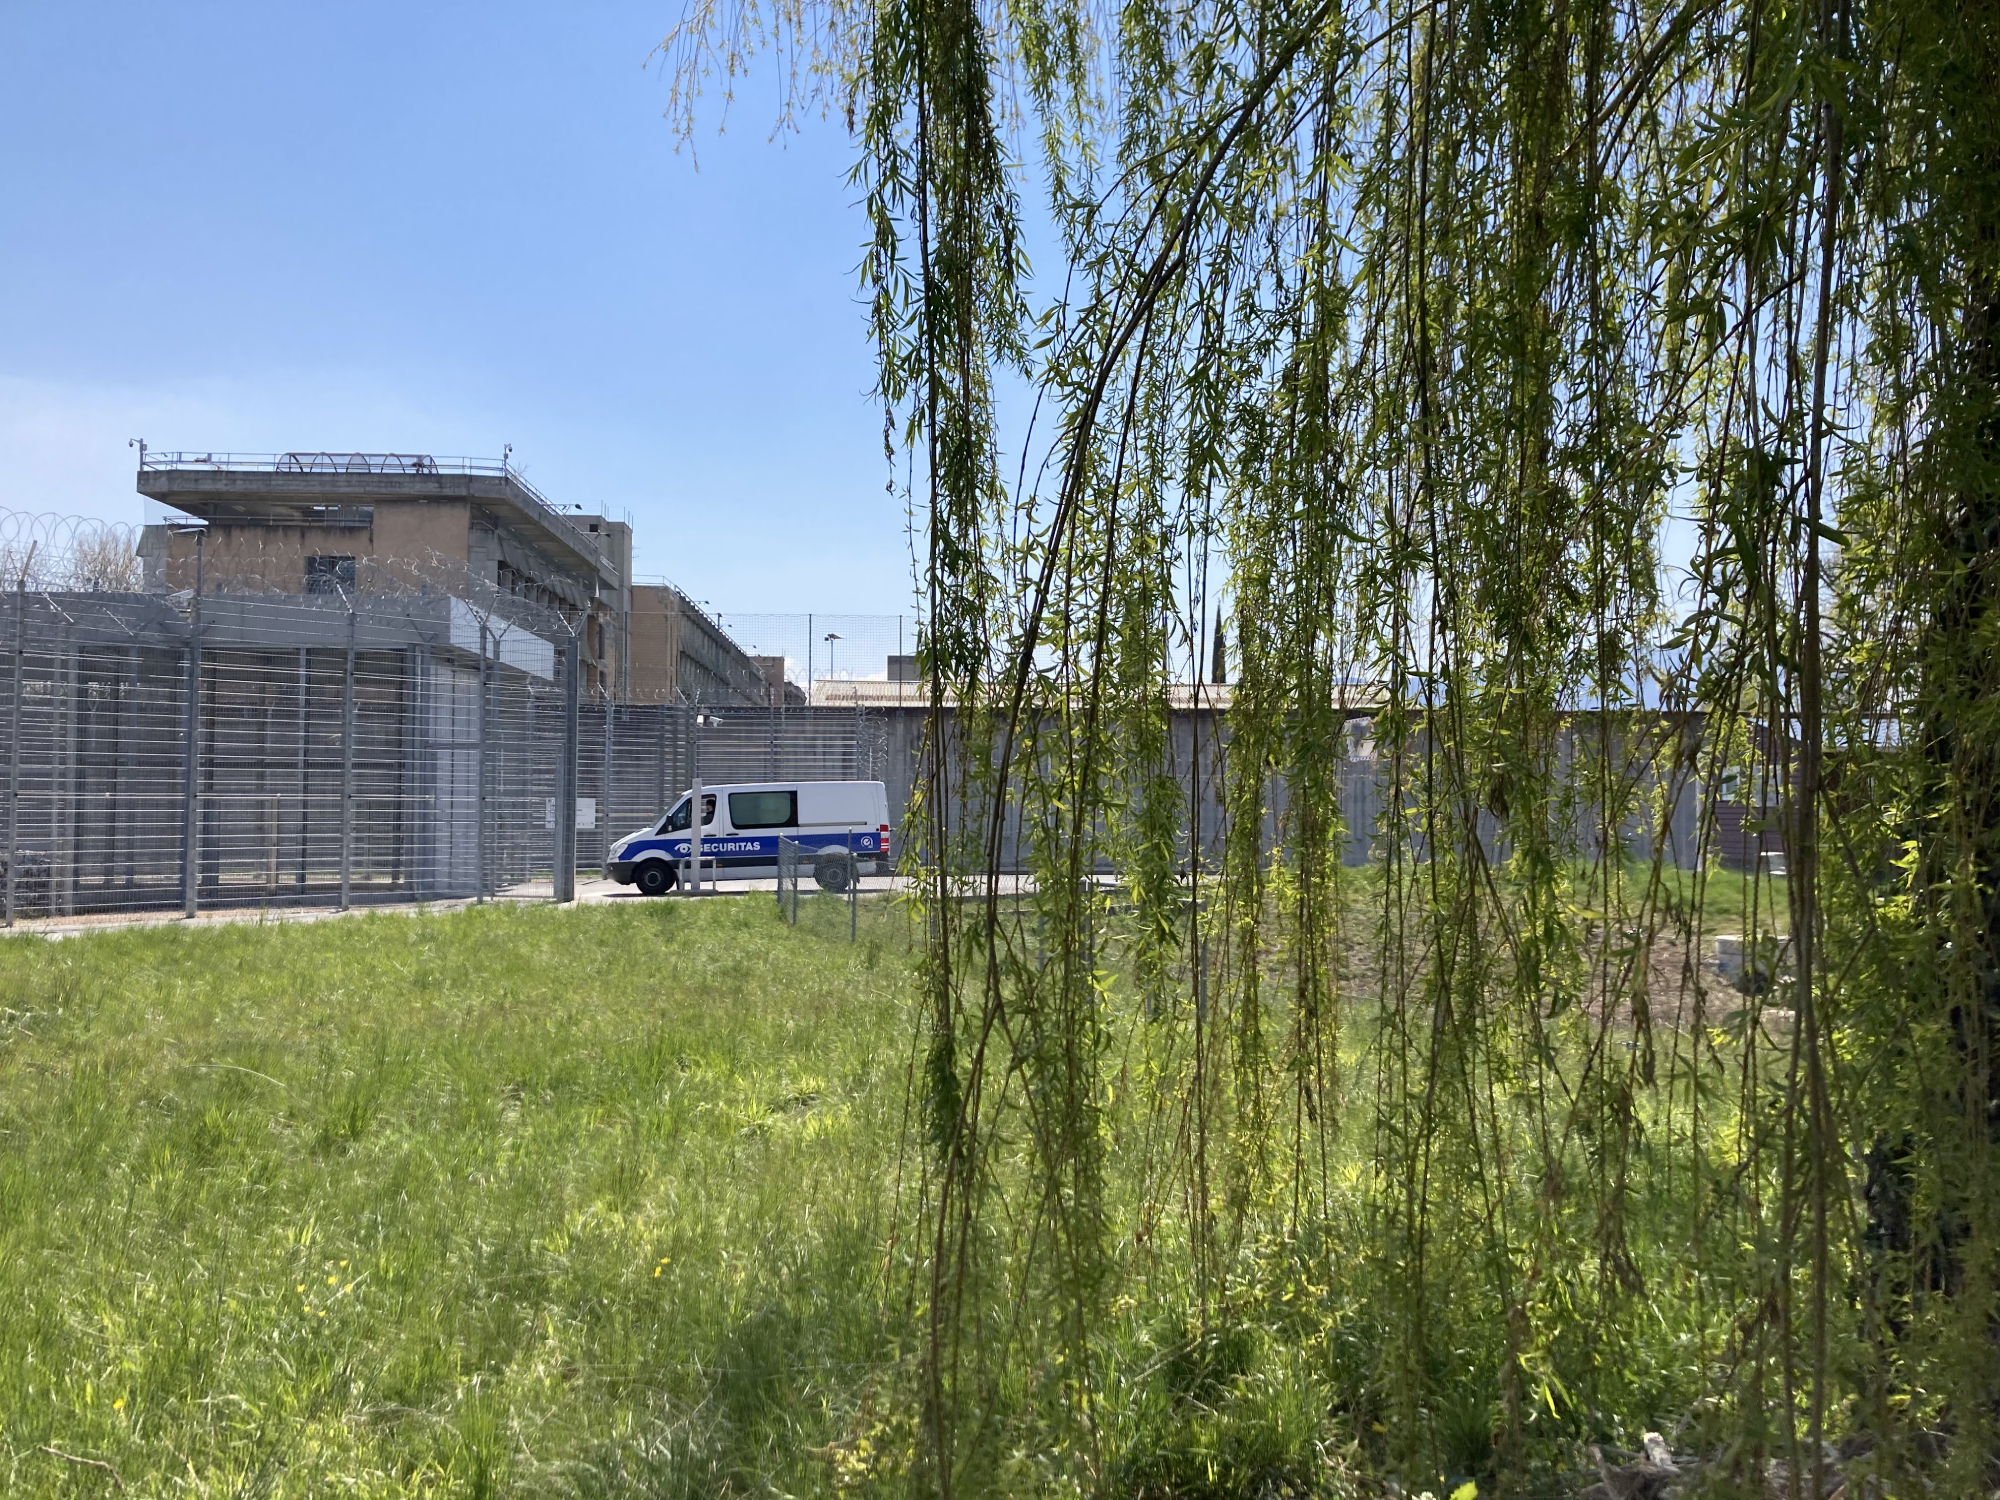 À la prison de La Brenaz (GE), Edio Soares, directeur du secteur social exécution des peines et mesures, et sa collègue Diane Lapraz oeuvrent auprès des détenu.e.s pour "réveiller une empathie endormie" (2021).